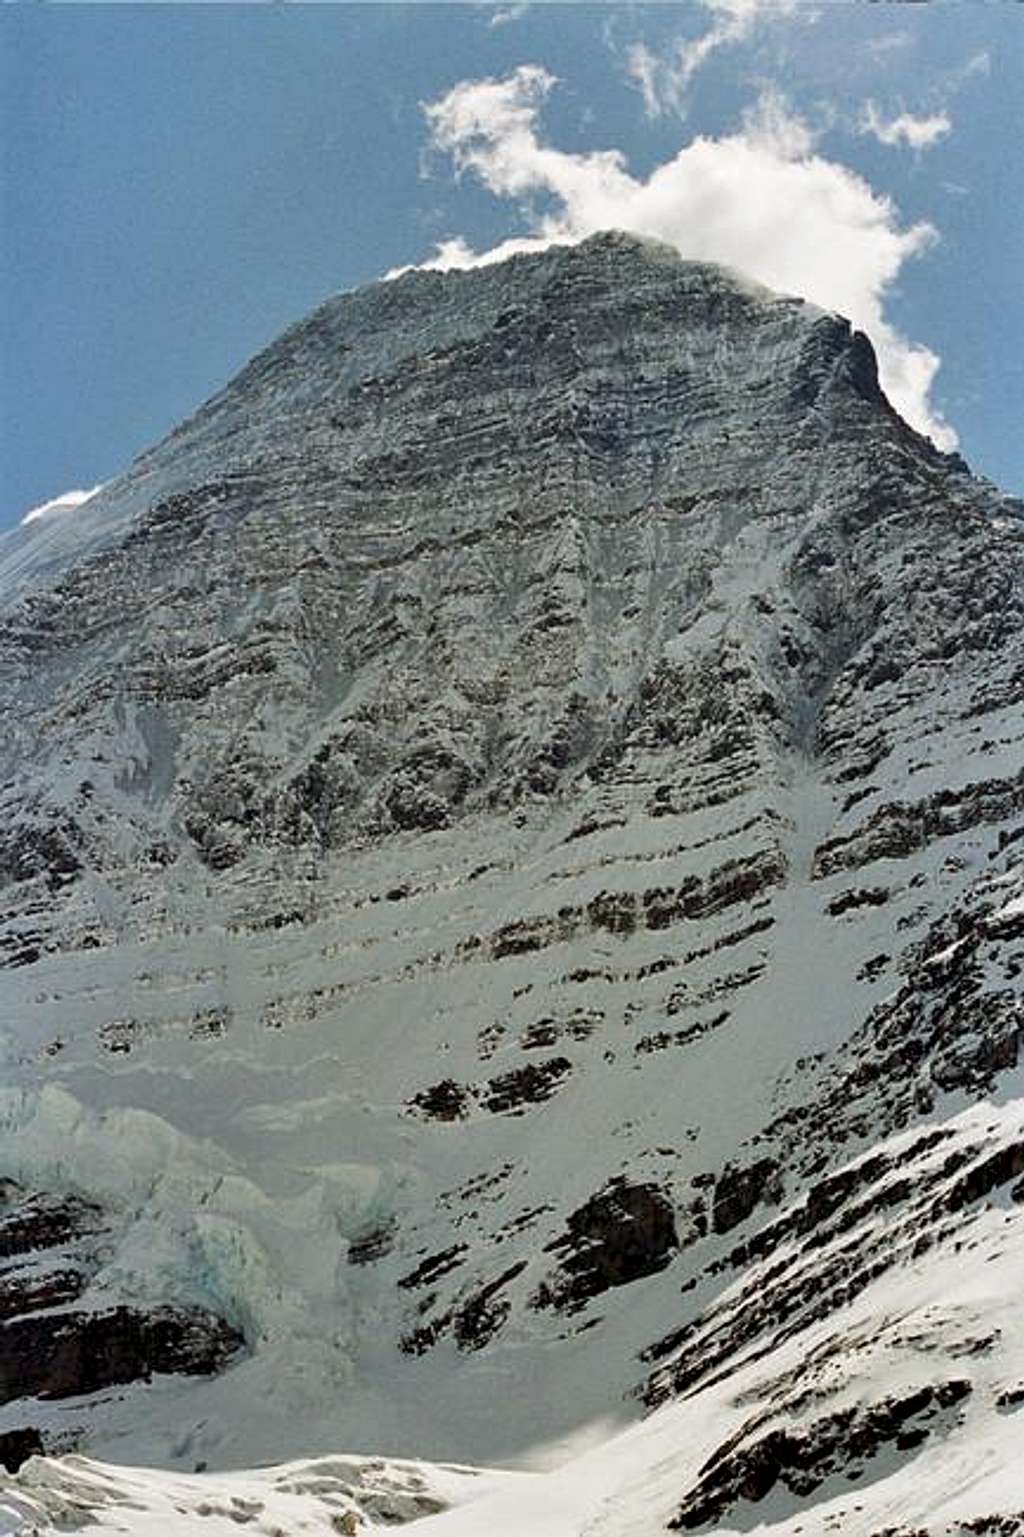 Emperor Face, Mt. Robson